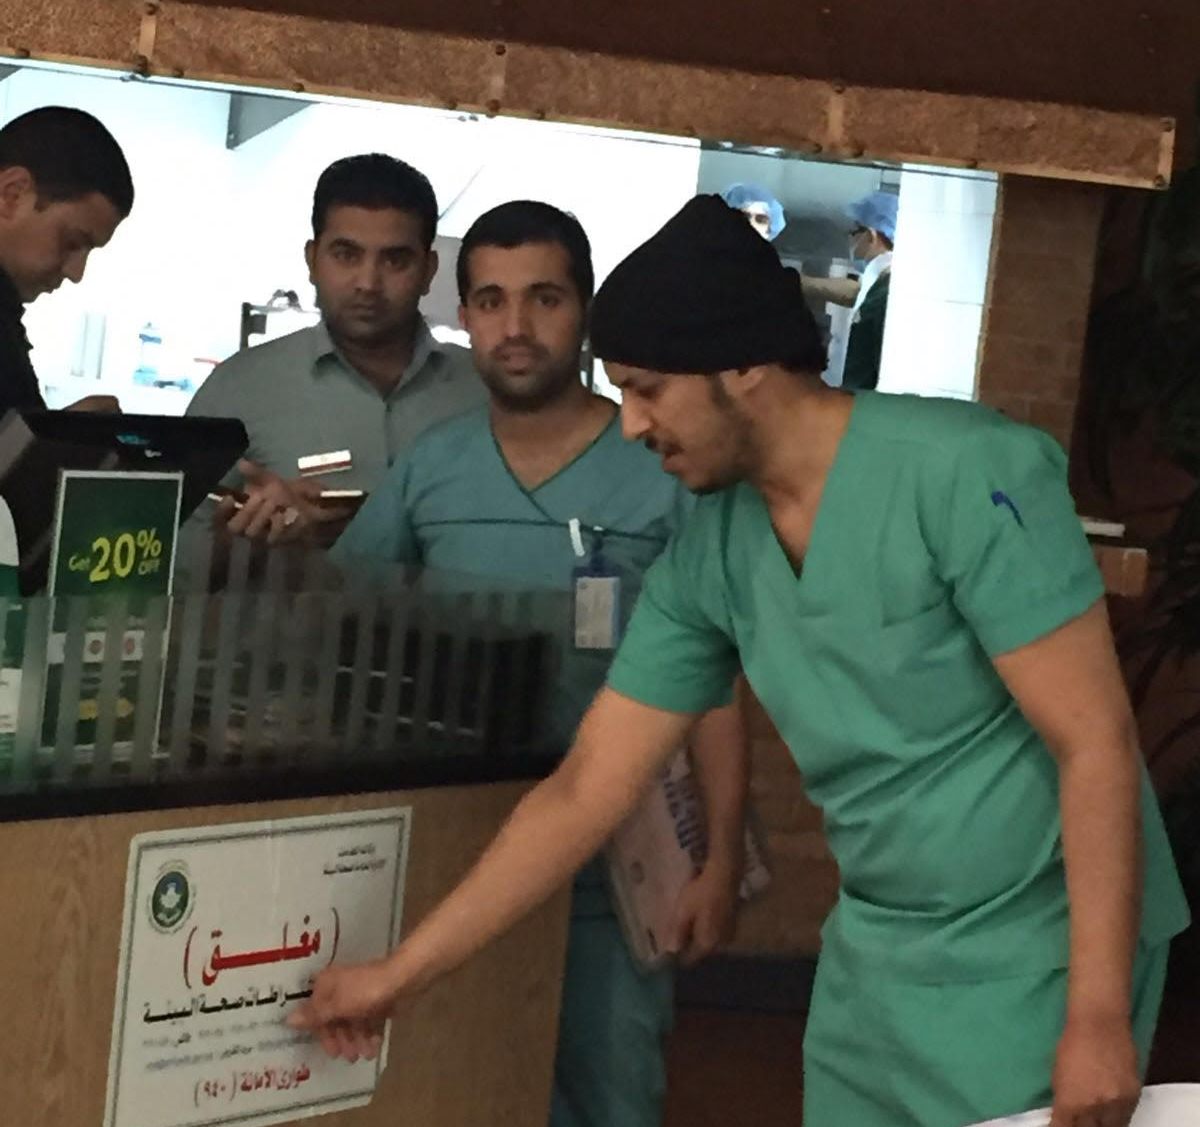 إغلاق منشآت غذائية لمخالفات صحية بمولات شهيرة في #الرياض